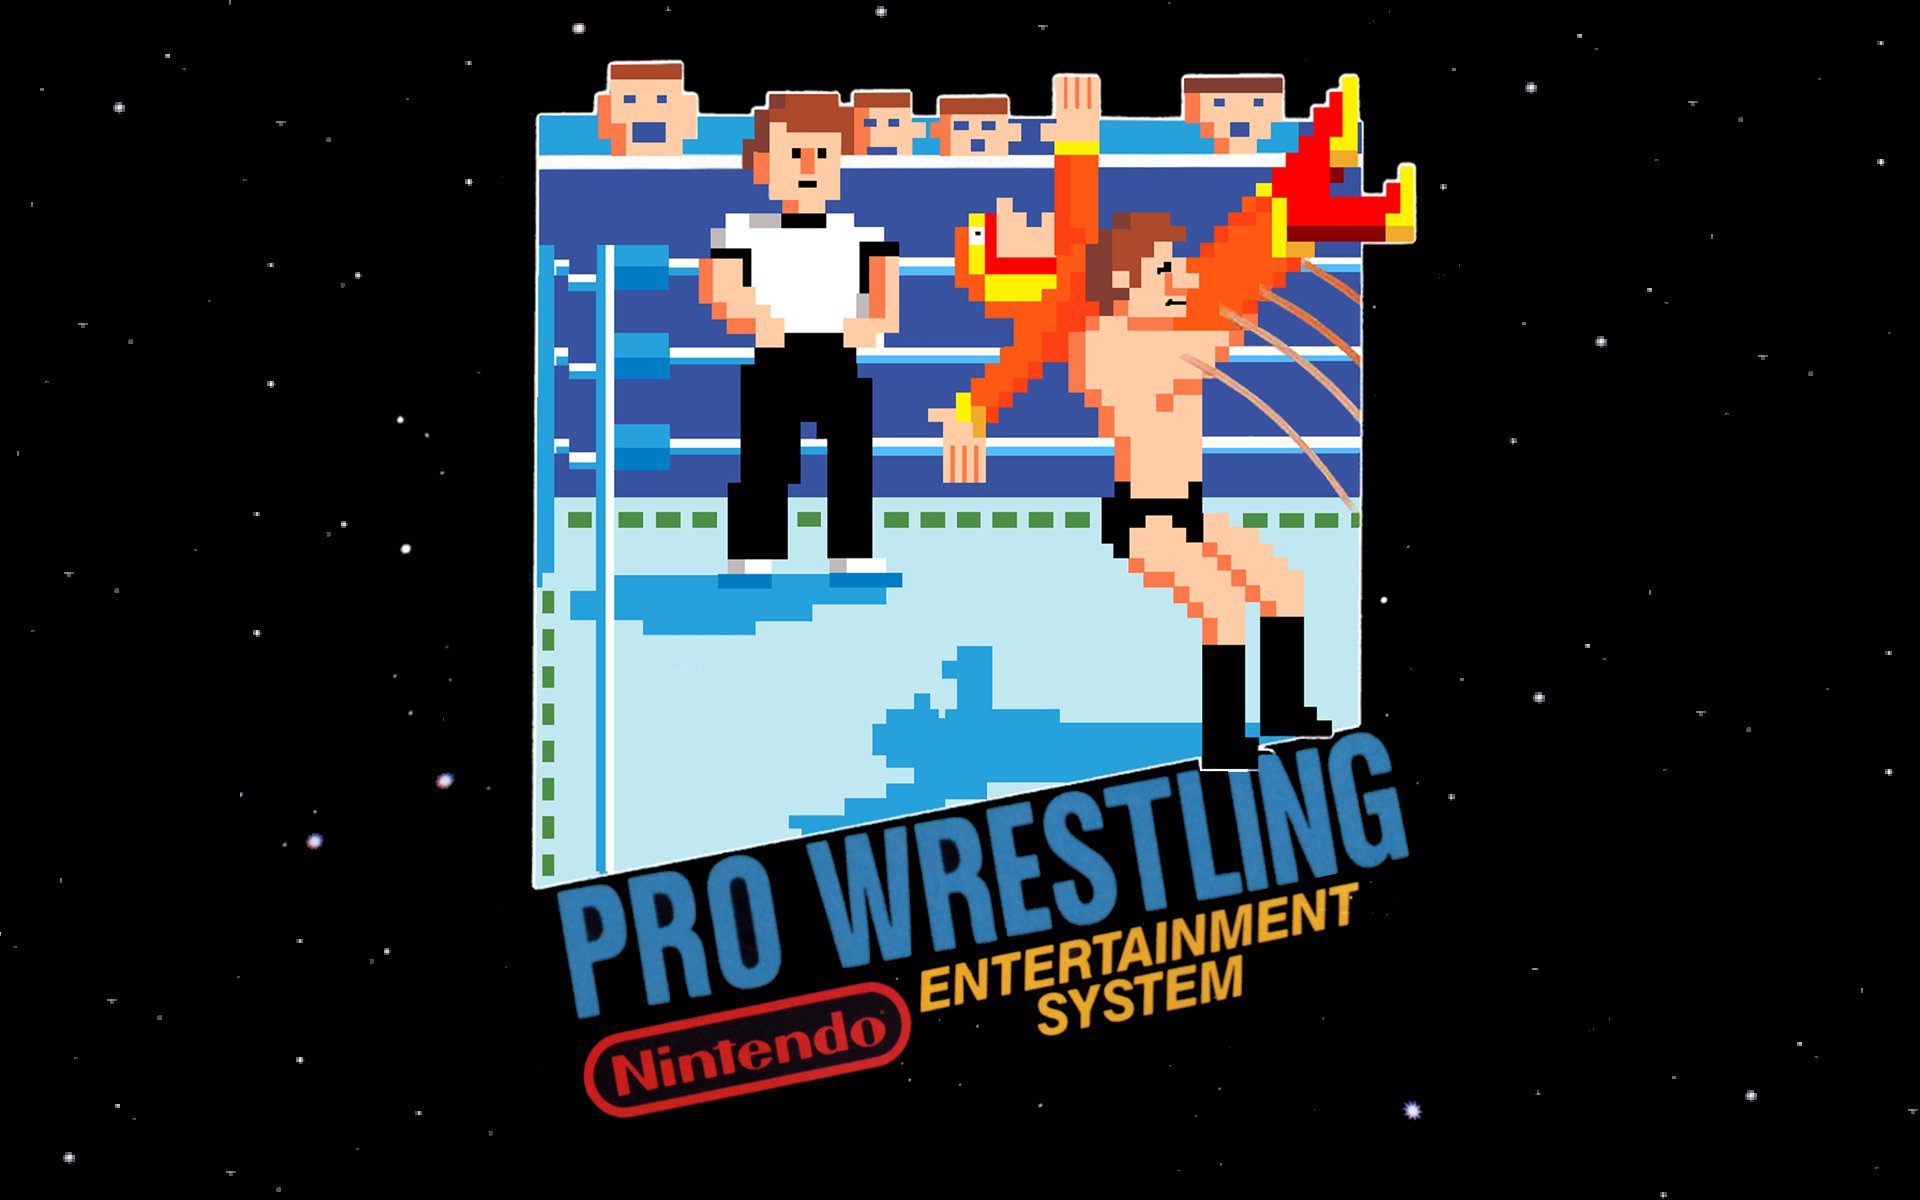 world wrestling entertainment wallpaper